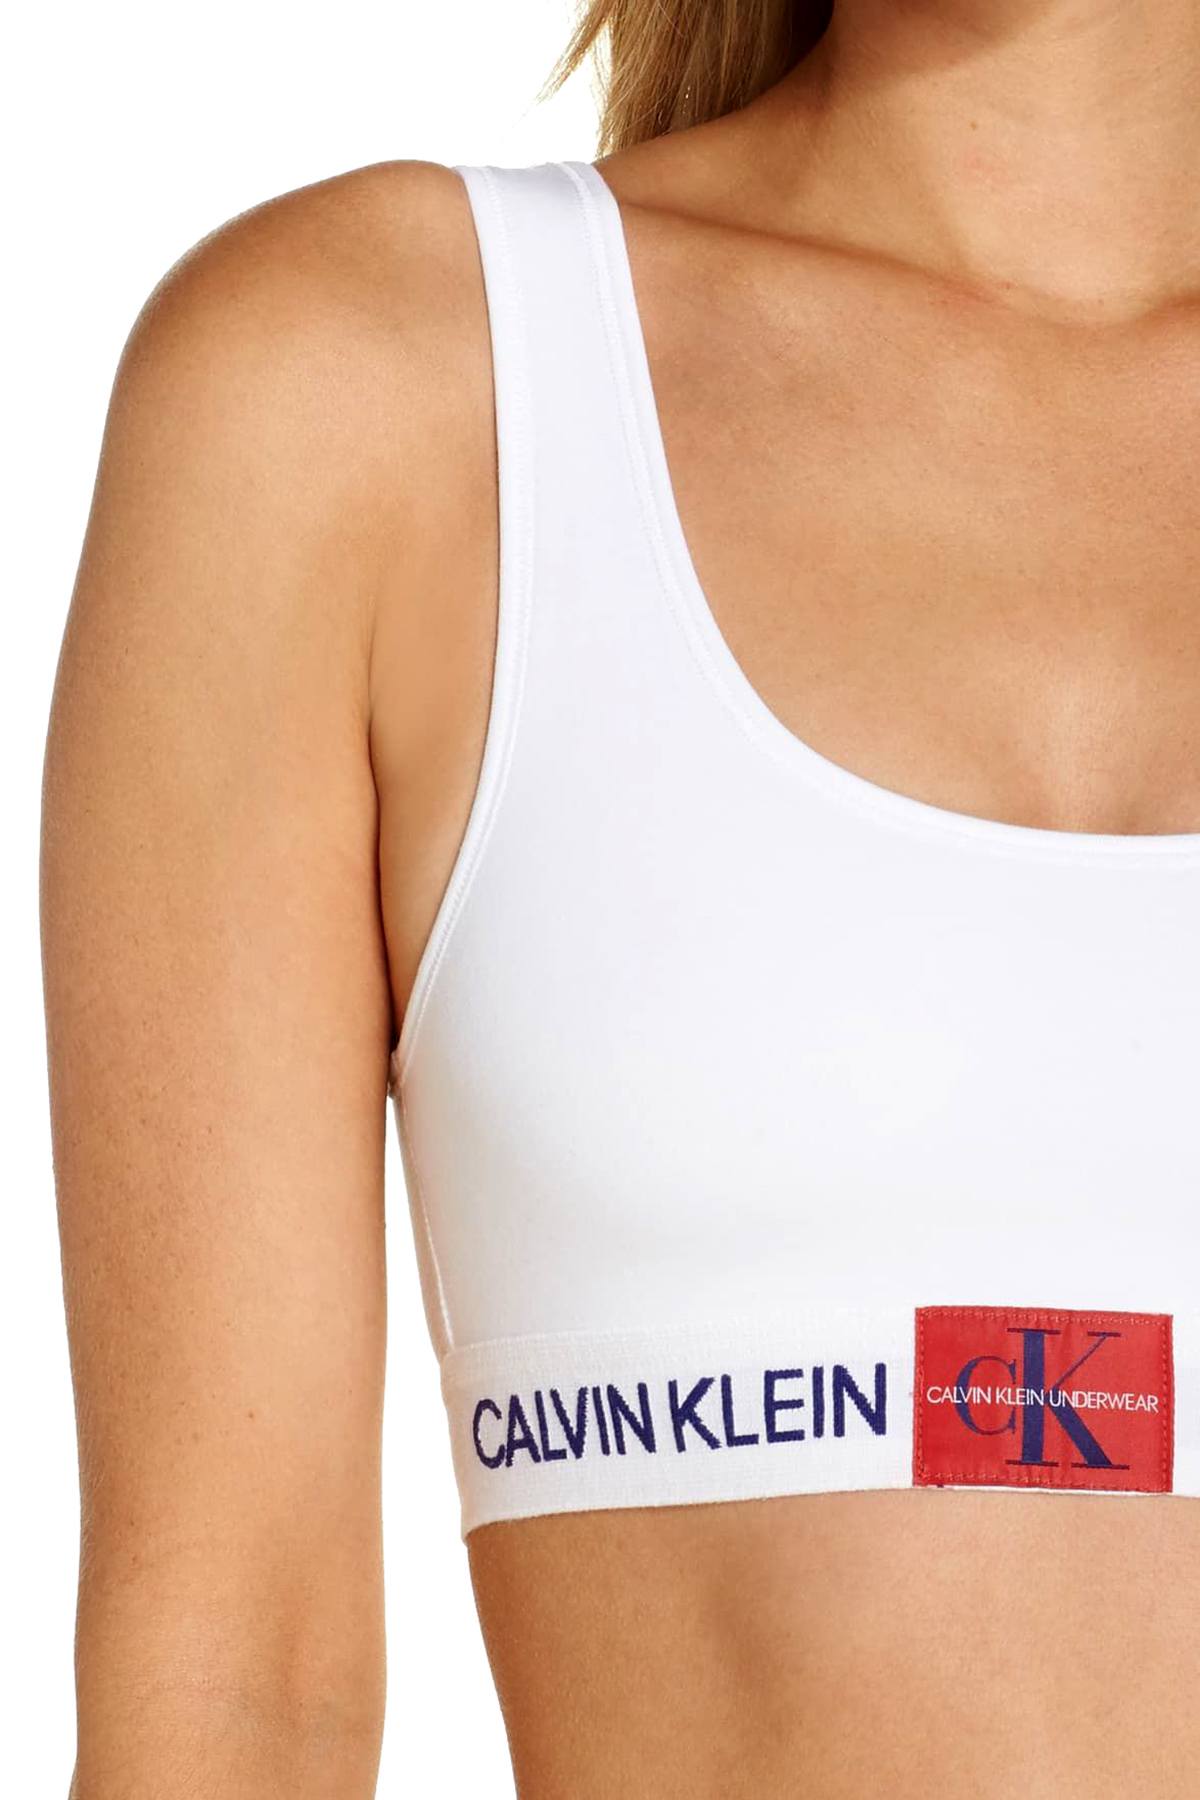 Calvin Klein White Monogram Unlined Bralette